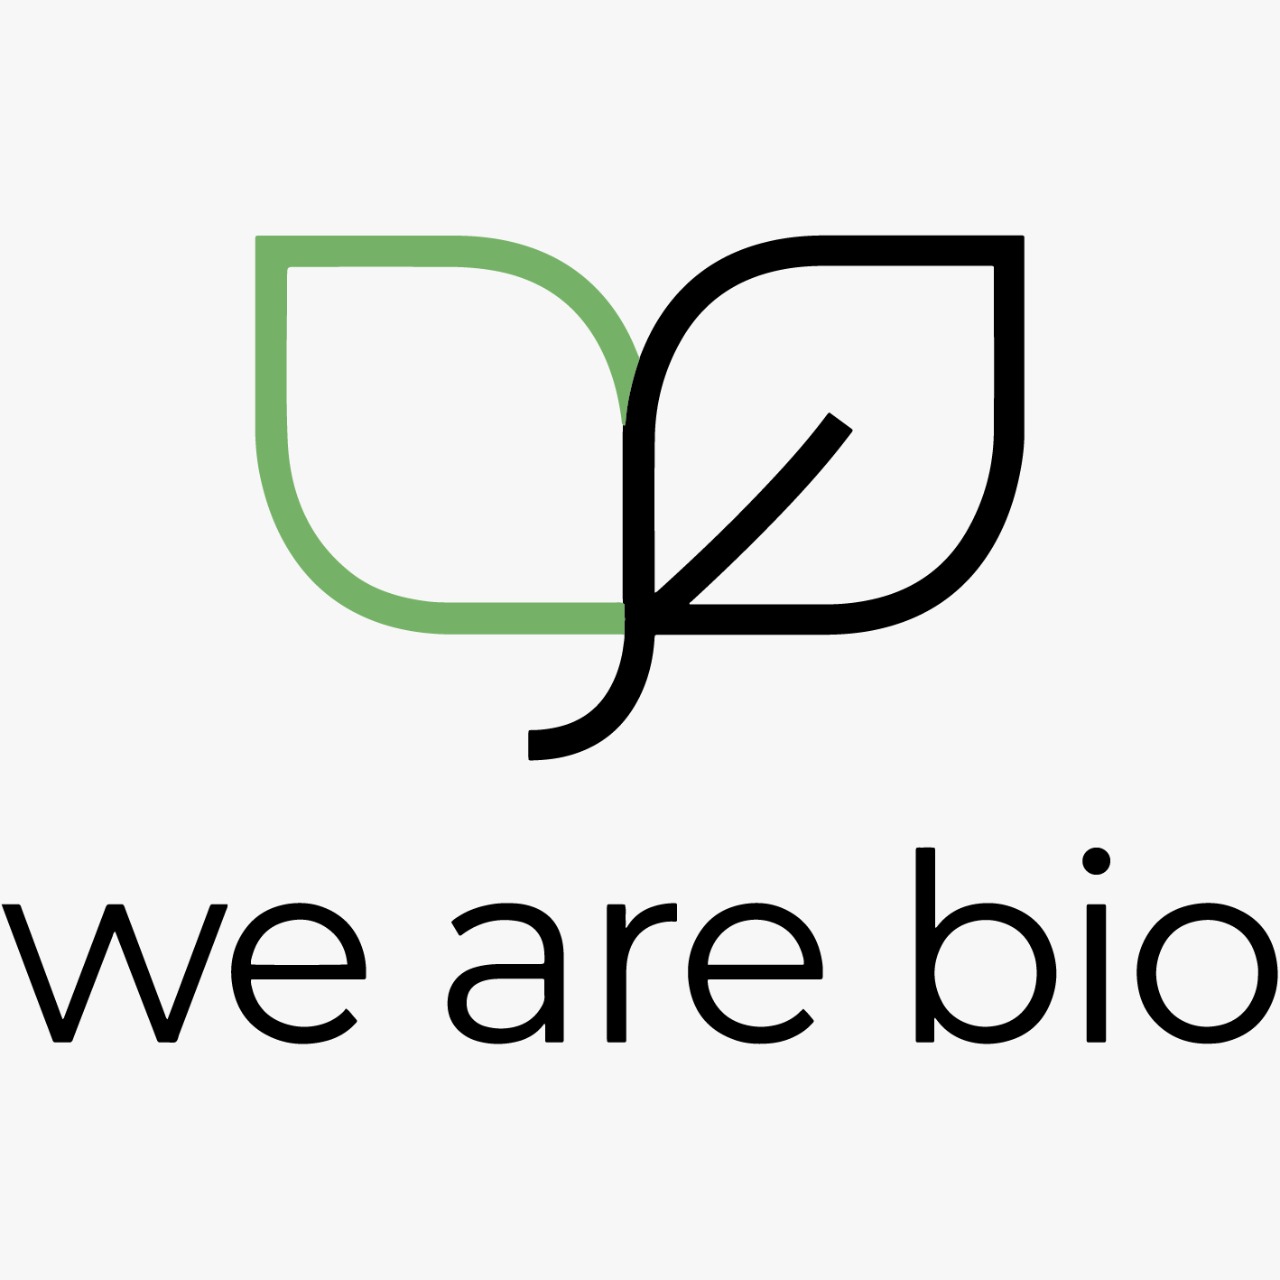 We are bio